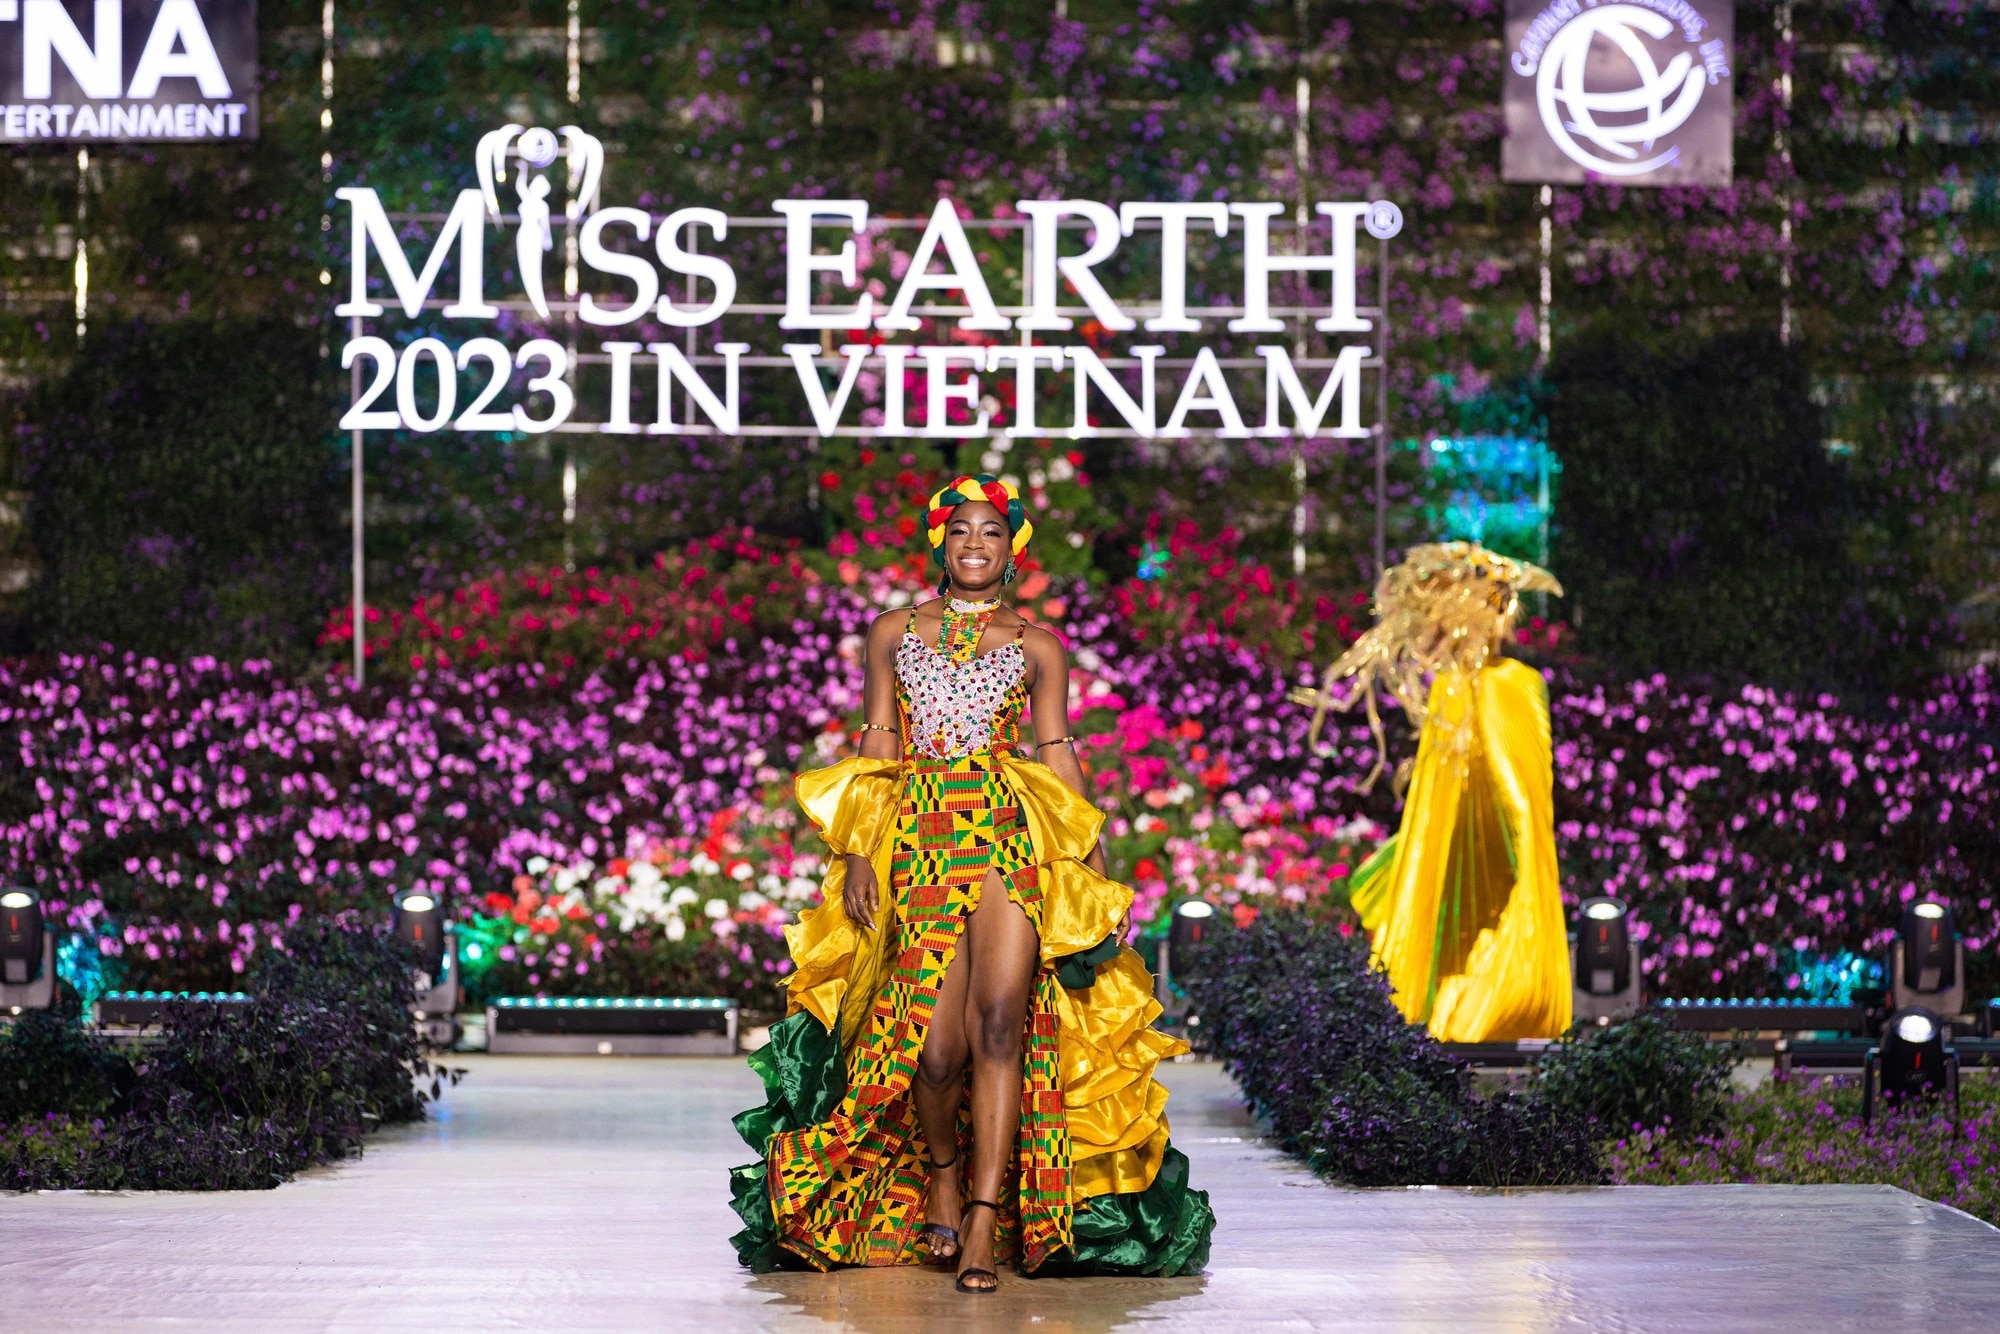 Bán kết Miss Earth 2023 màn trình Trang phục Dân tộc bùng nổ hình ảnh cỏ hoa, muông thú - Ảnh 29.